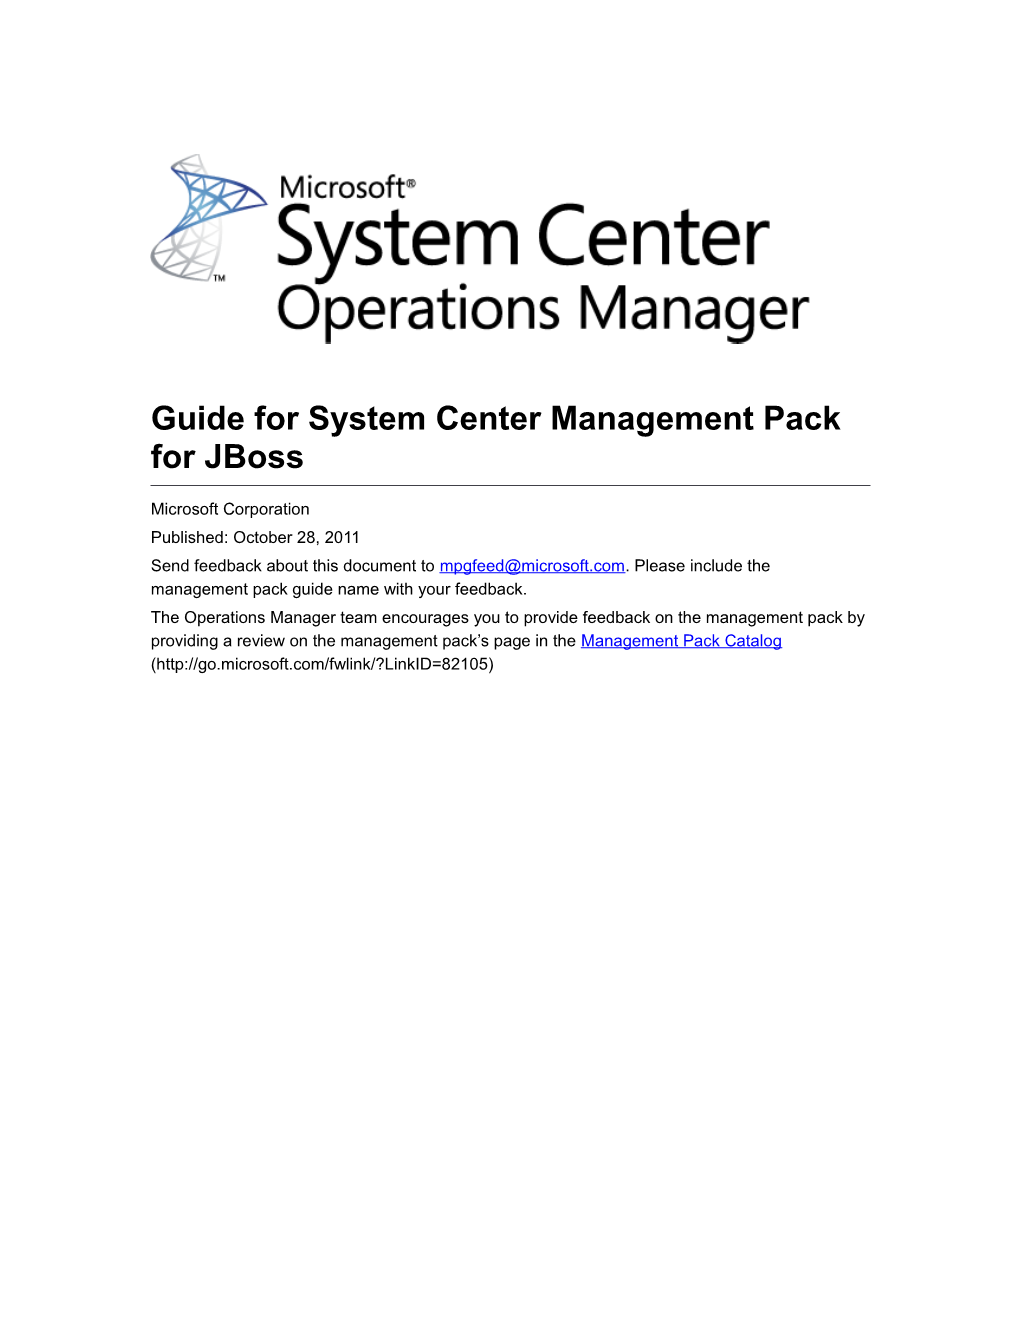 Guide for System Center Management Pack for Jboss